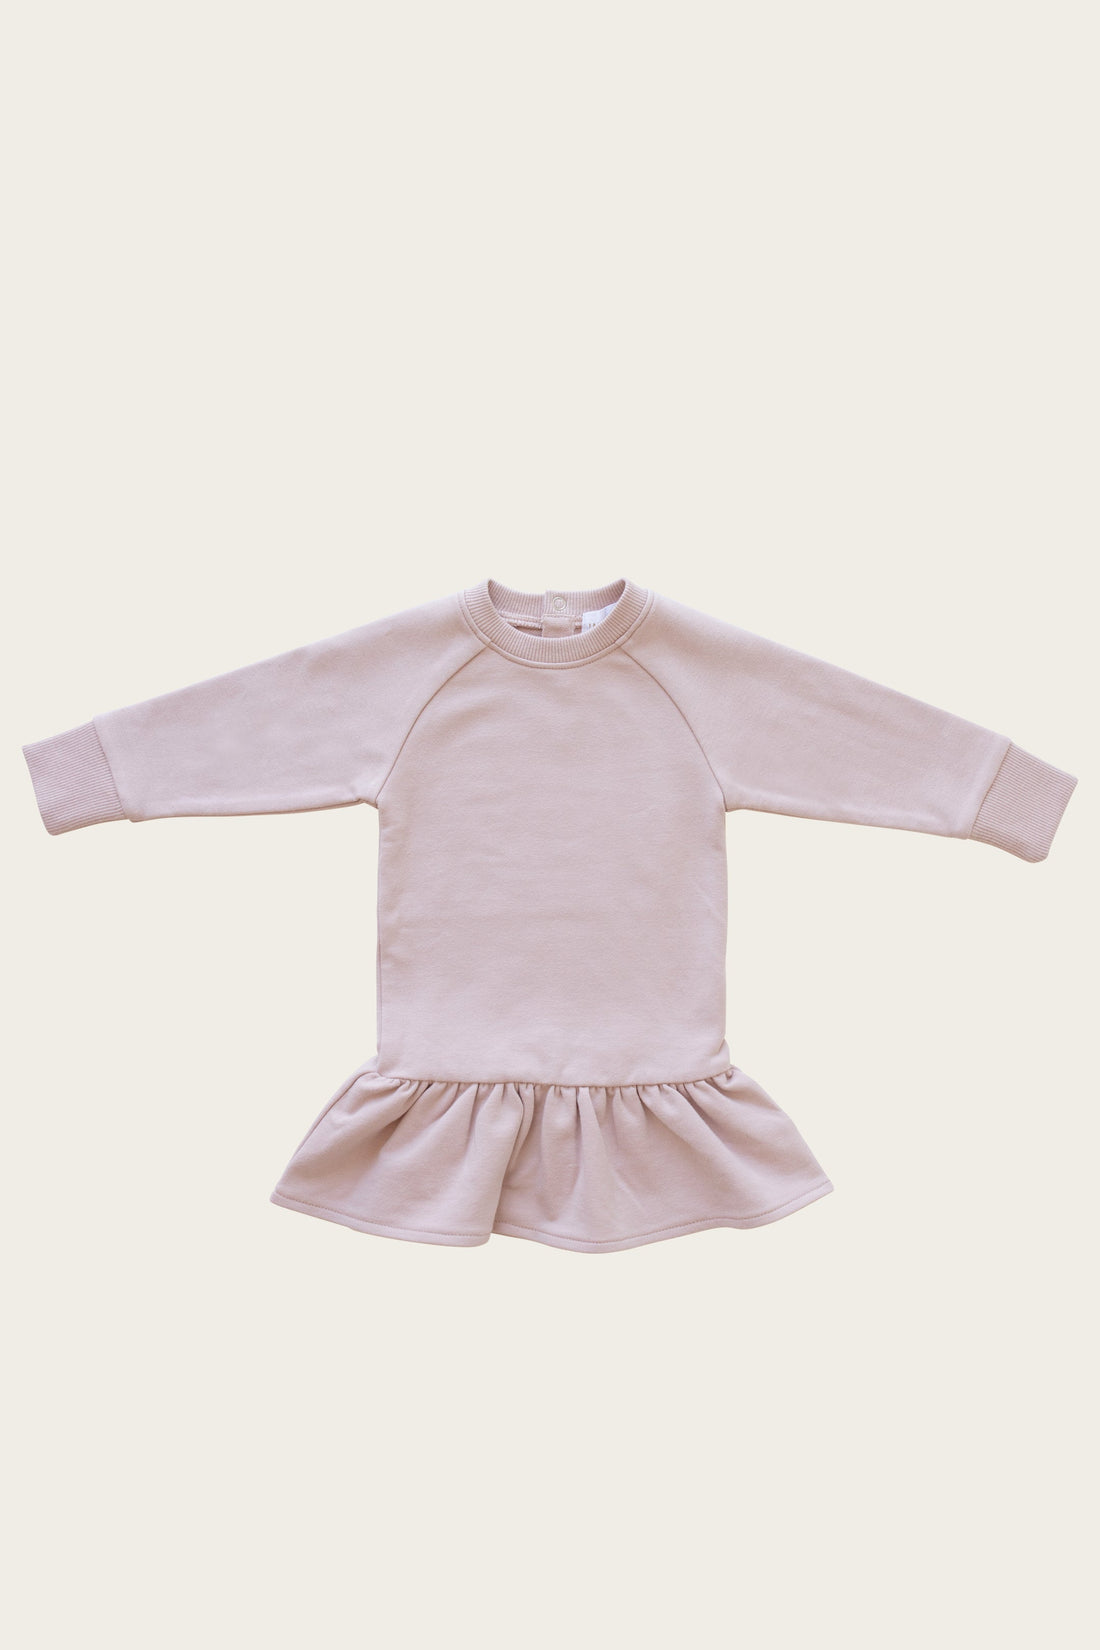 Maisie Sweater Dress - Amelie Childrens Dress from Jamie Kay USA